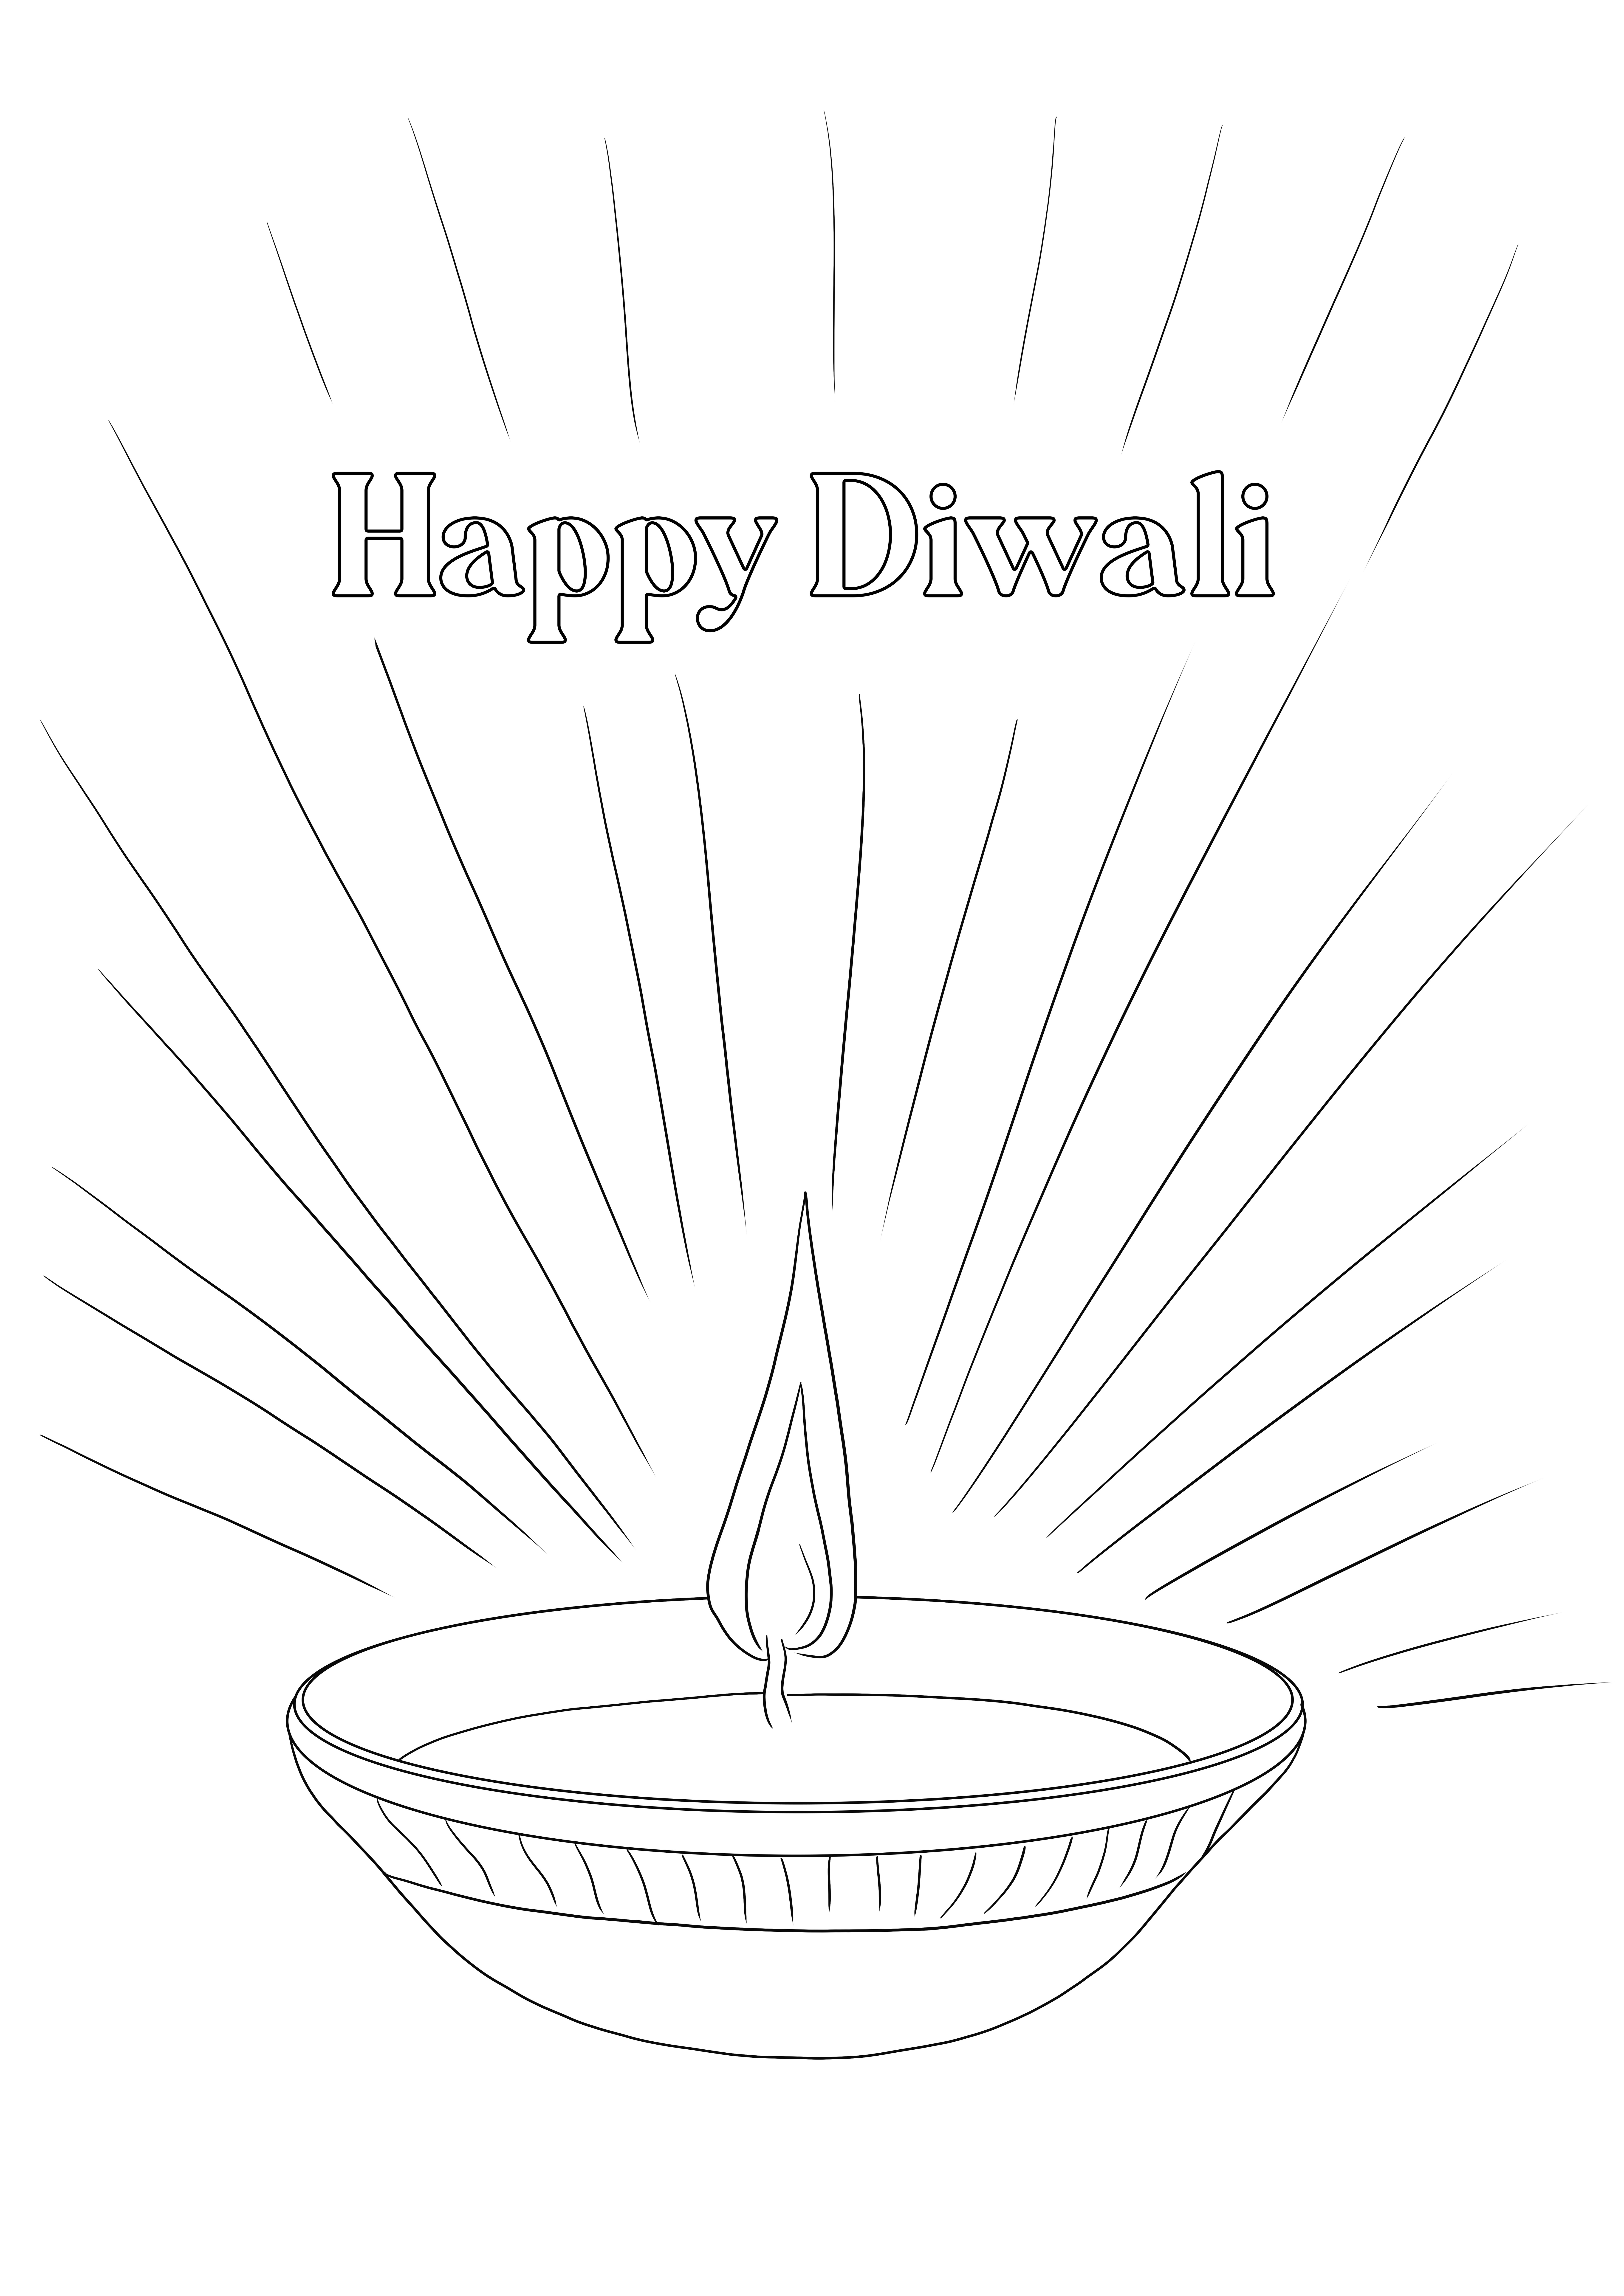 Diwali Diya egyszerű színezés és ingyenes nyomtatás minden korosztály számára